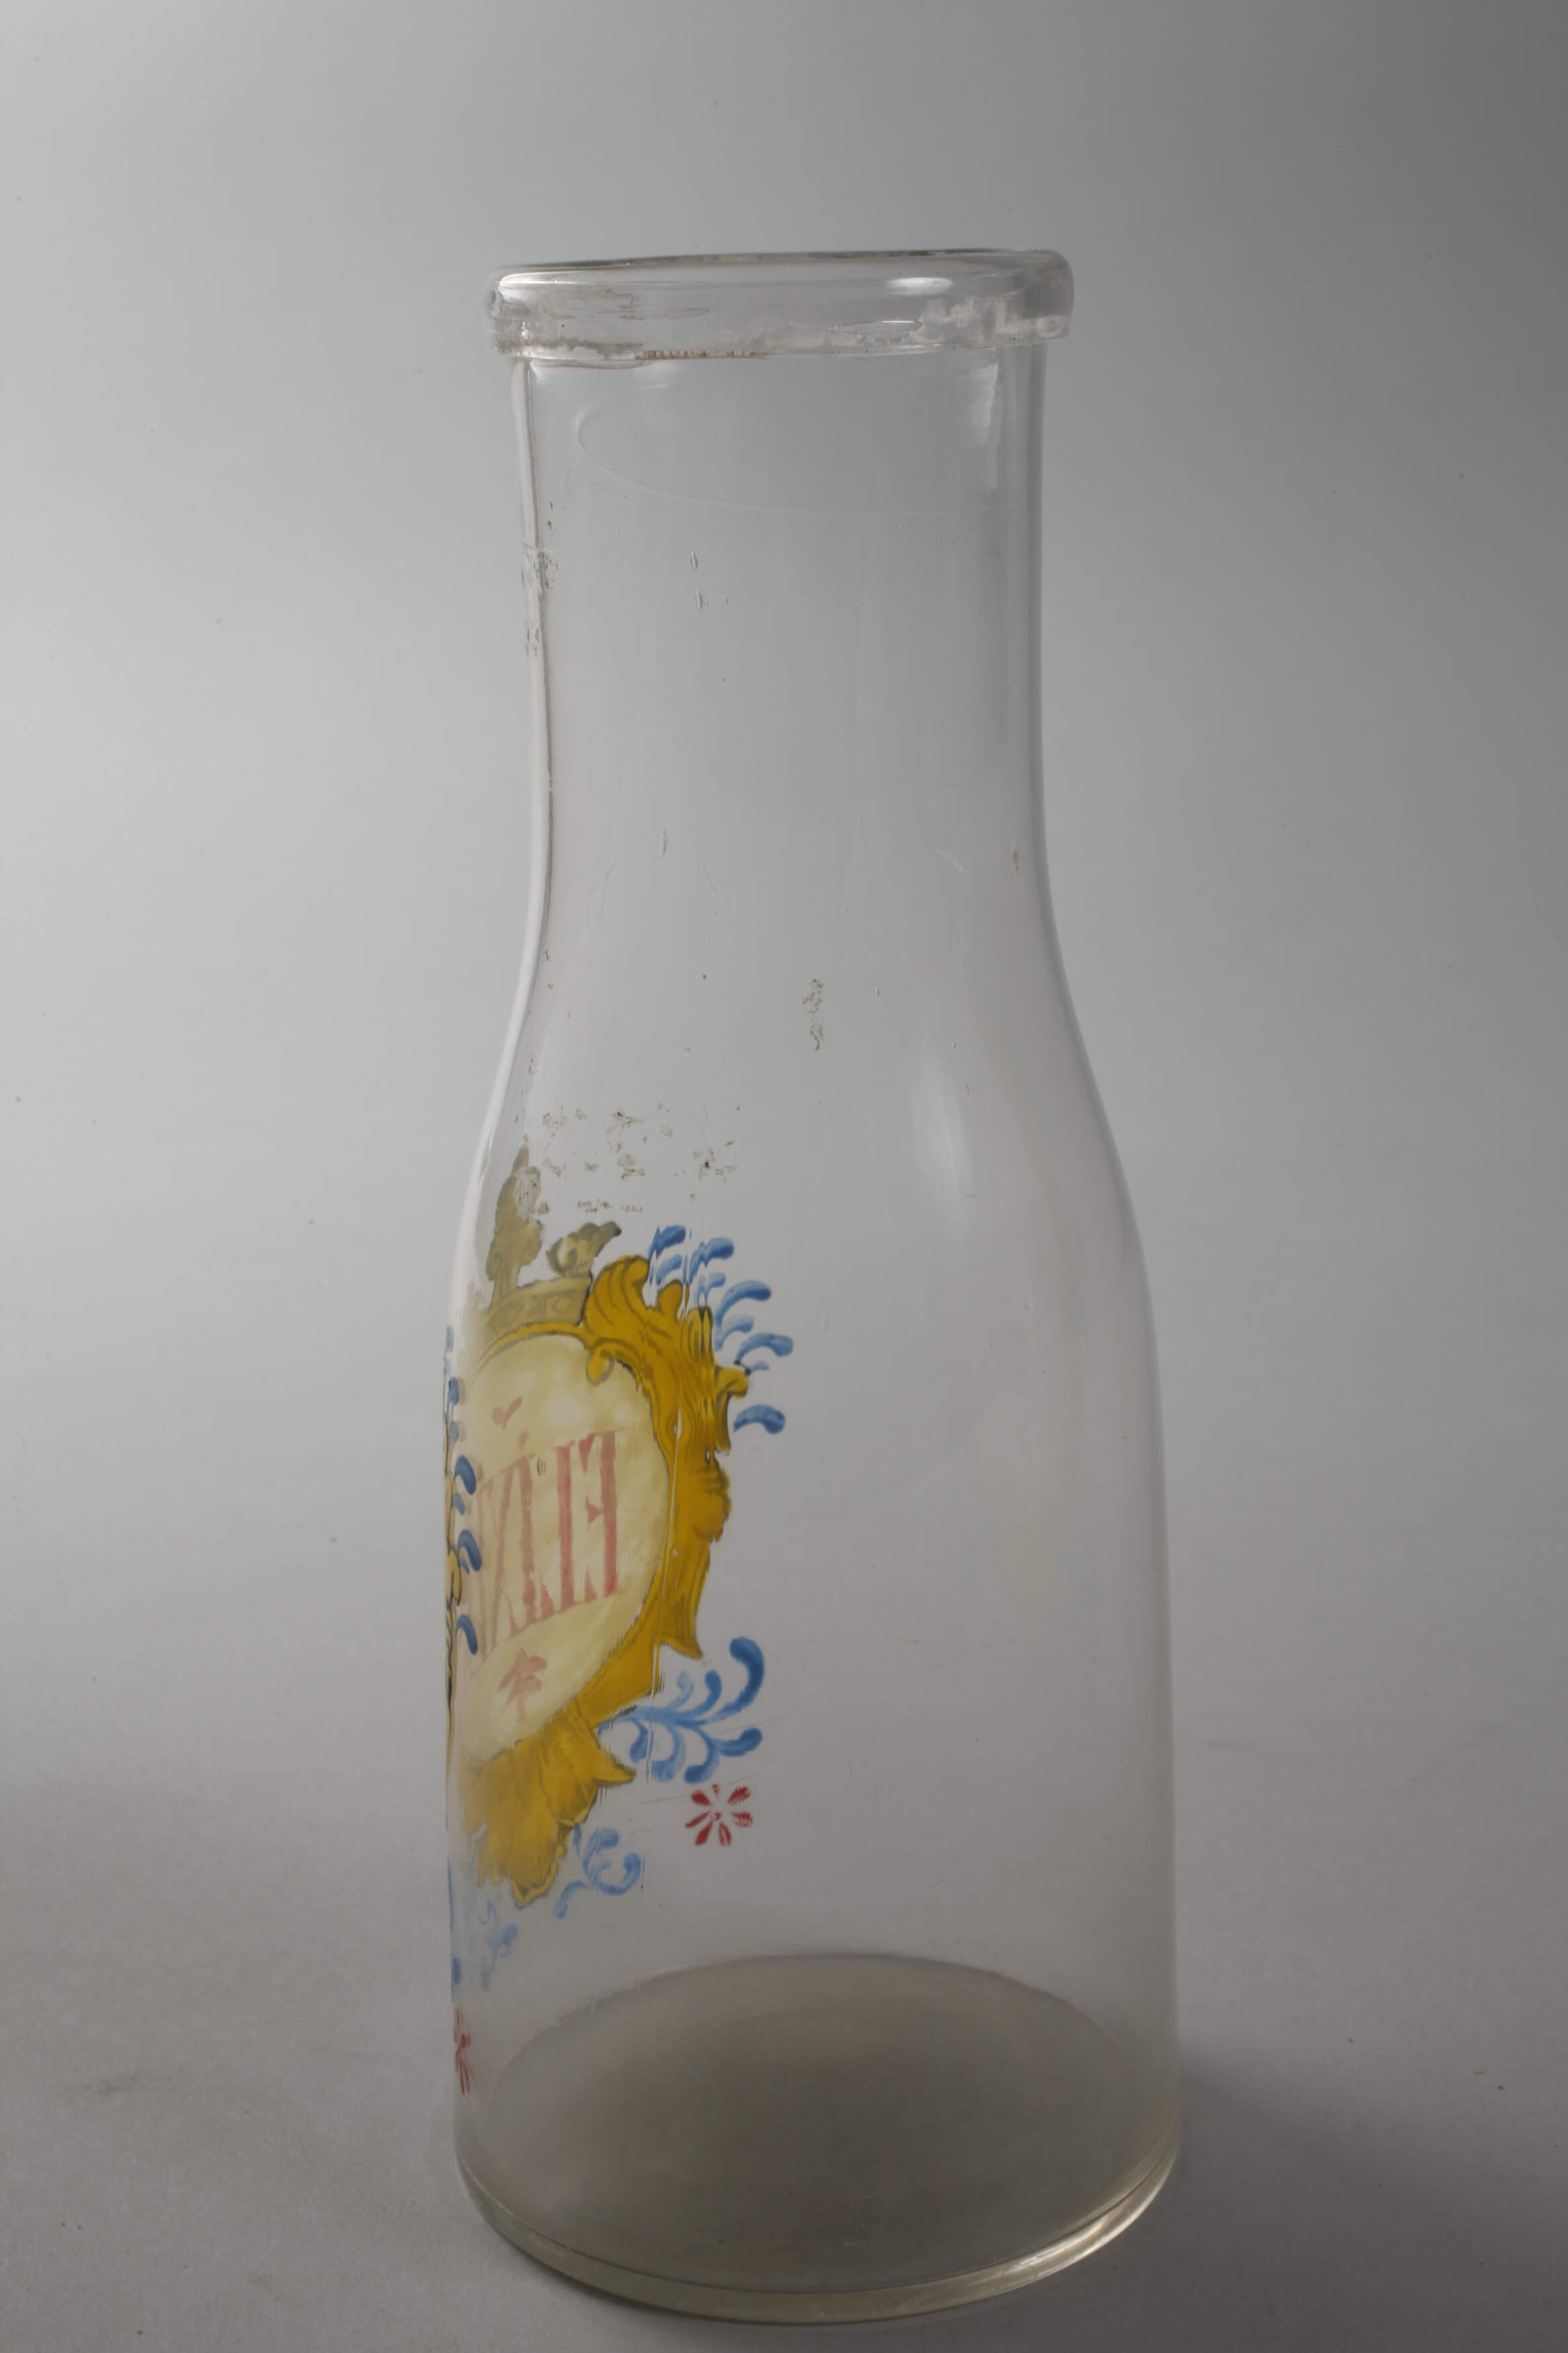 Apothecary jar "Elixir" - Image 3 of 3